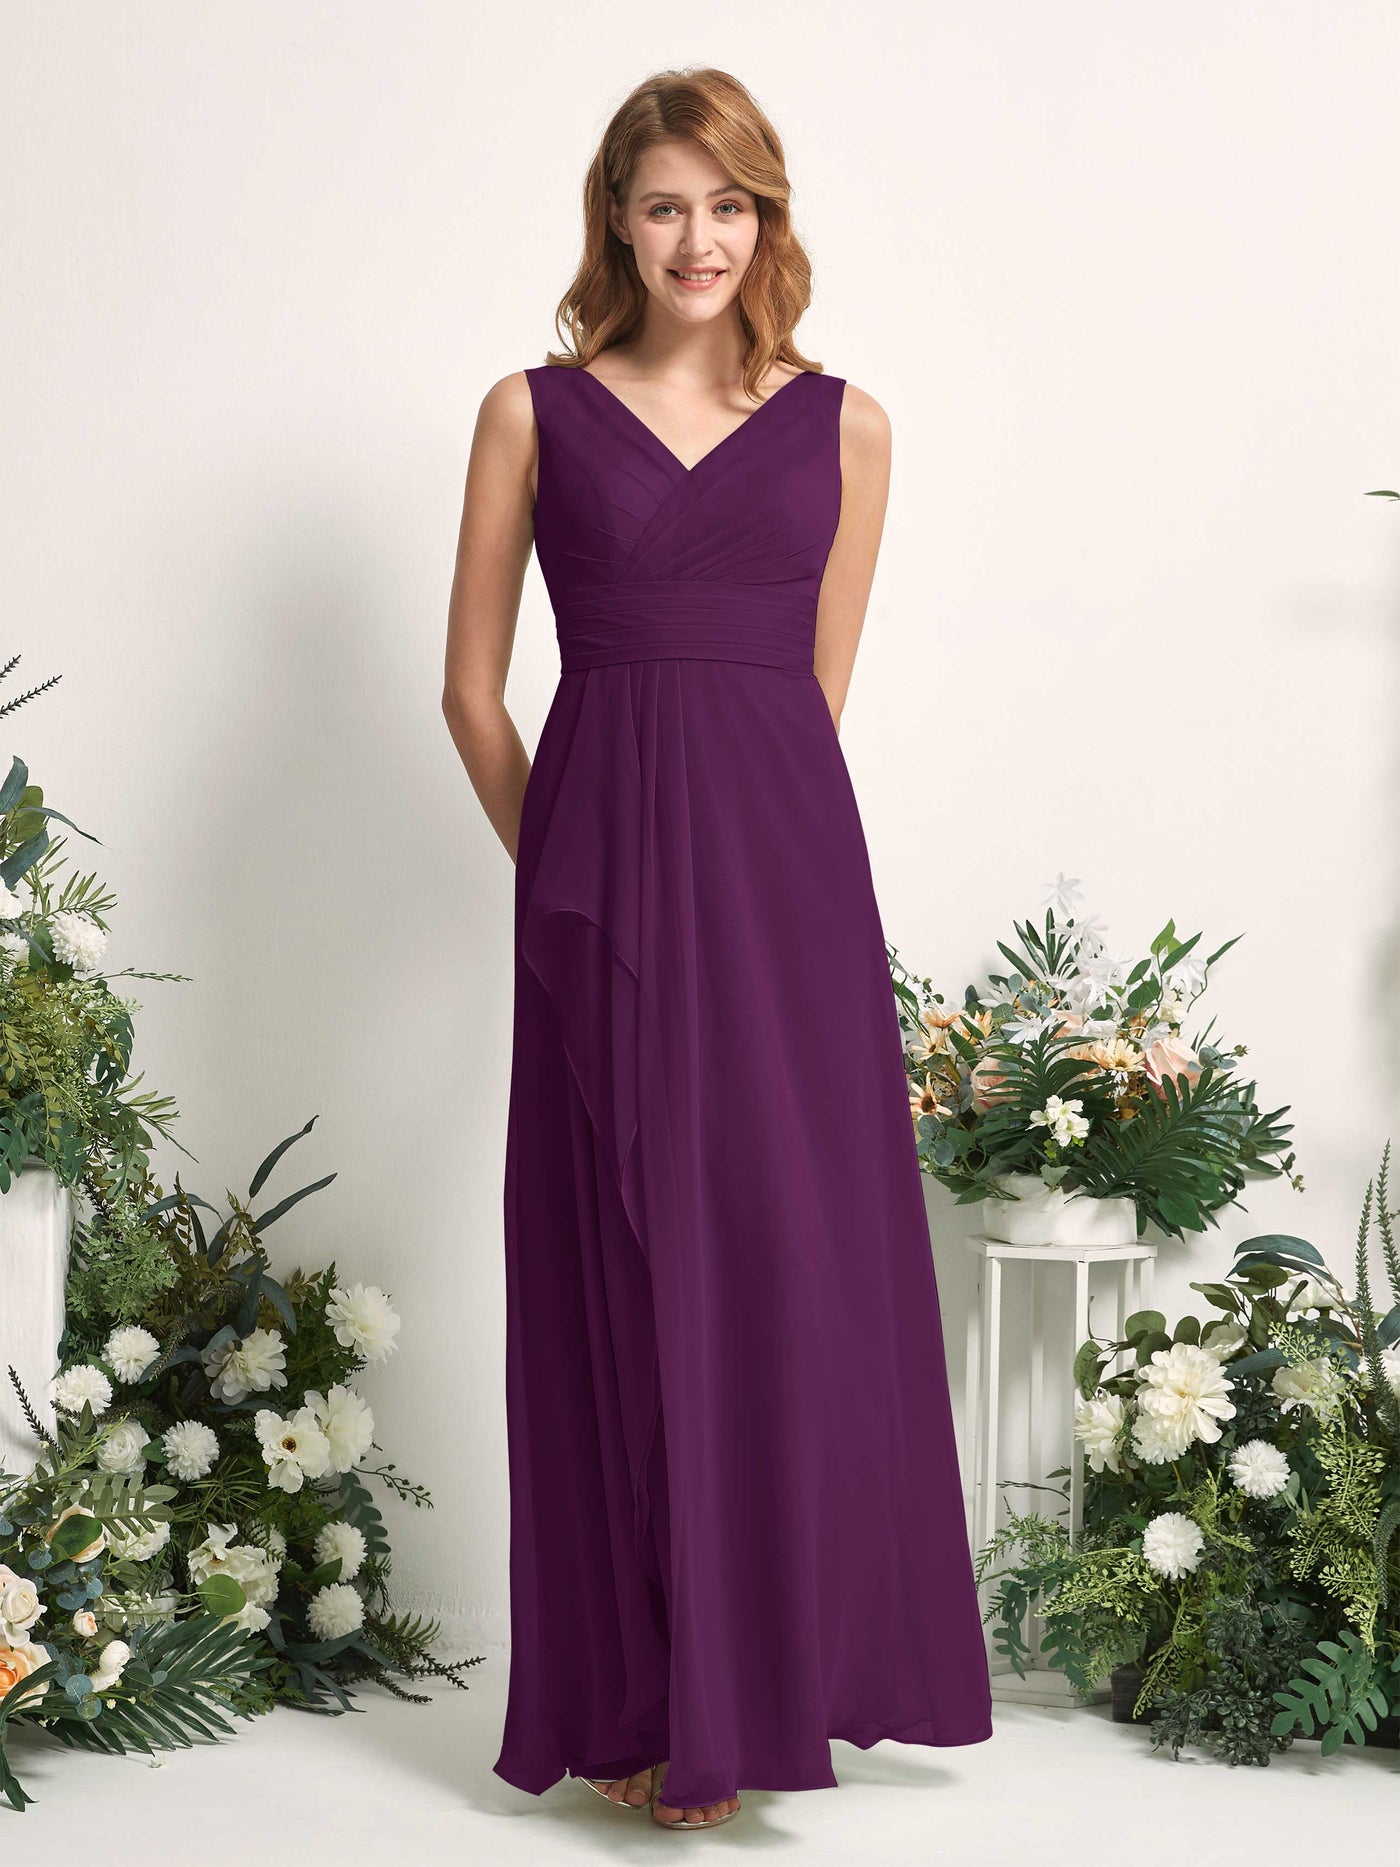 Bridesmaid Dress A-line Chiffon V-neck Full Length Sleeveless Wedding Party Dress - Grape (81227131)#color_grape